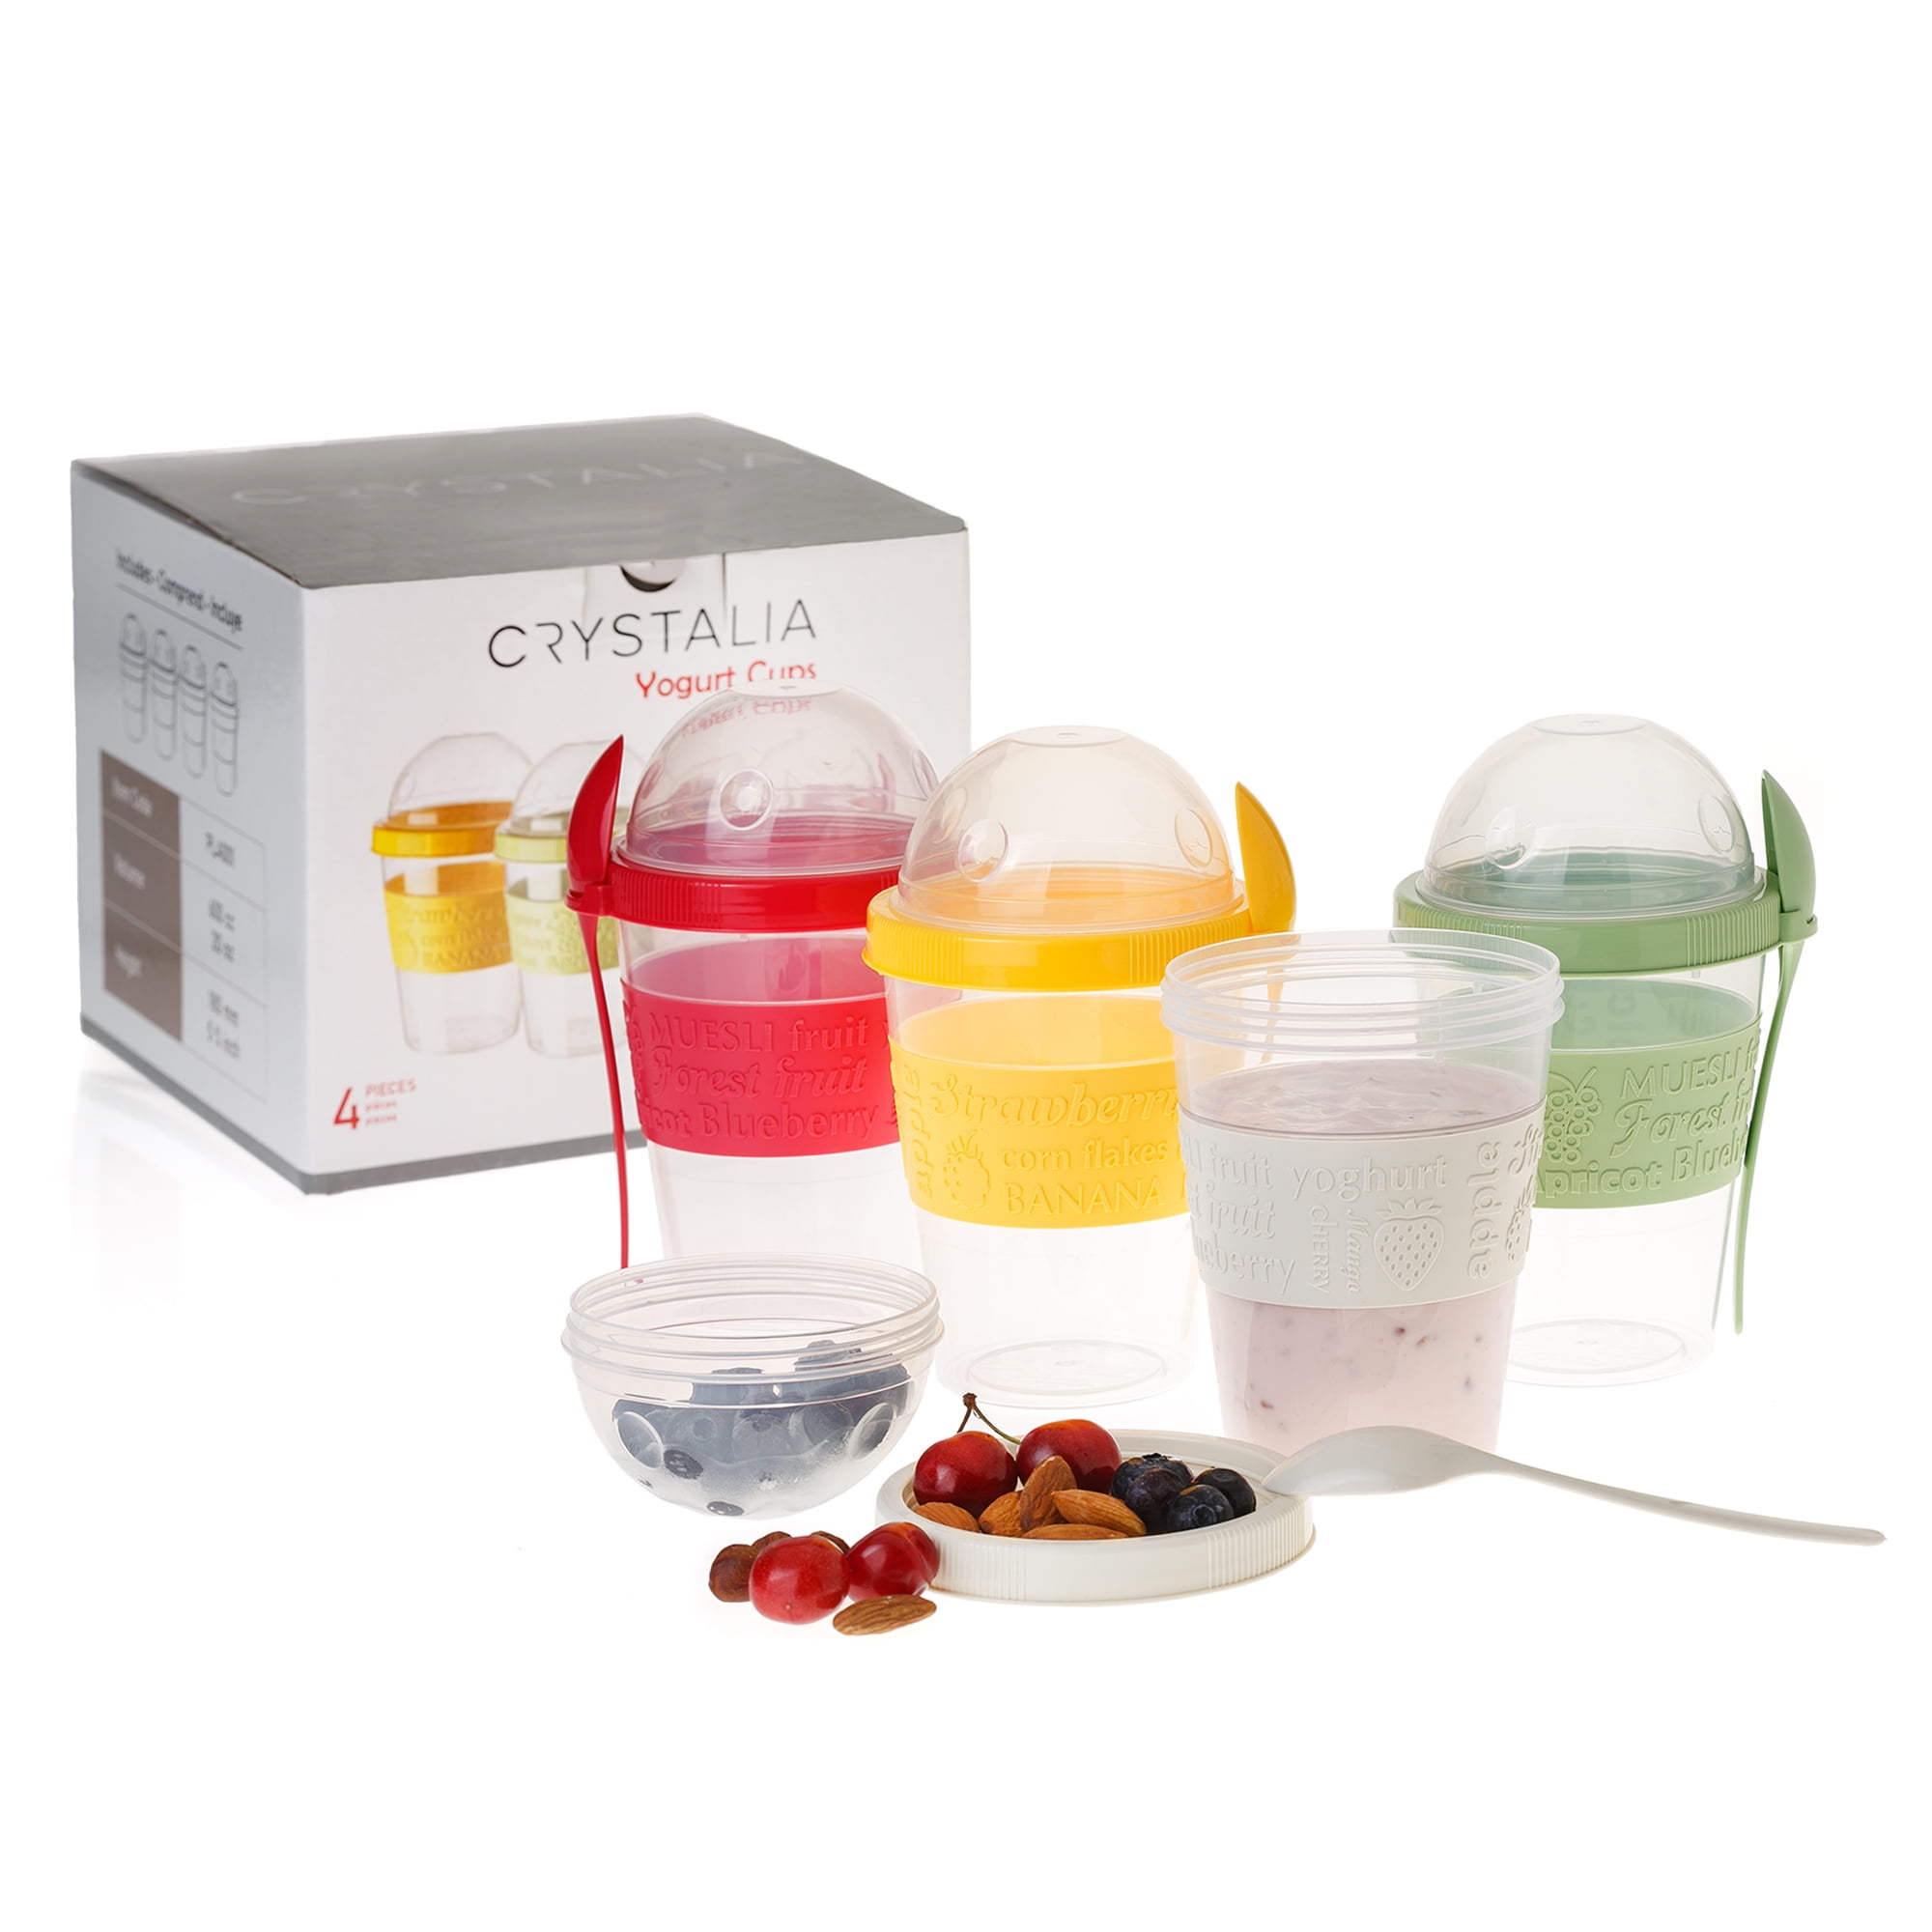 Crystalia Muesli 22 oz. Yogurt Parfait Cups with Lids, Set of 4